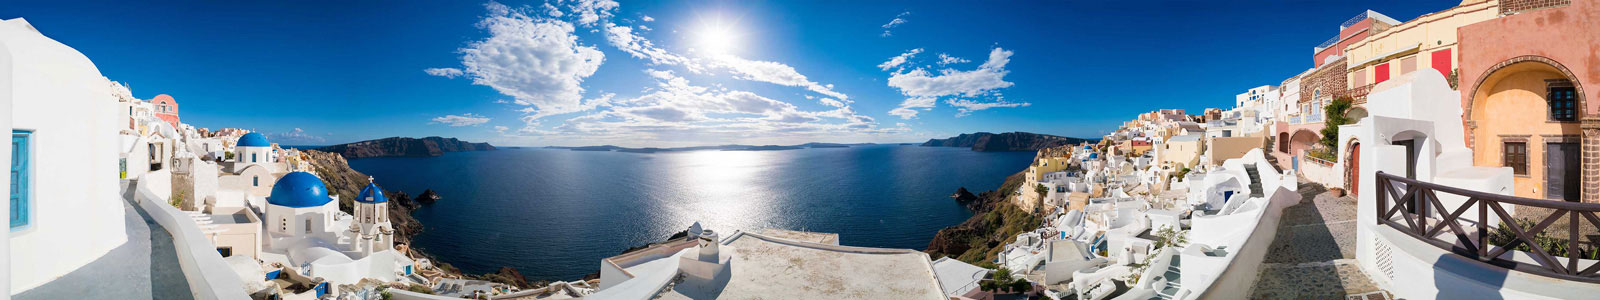 №6255 - Панорама острова Санторини, Греция